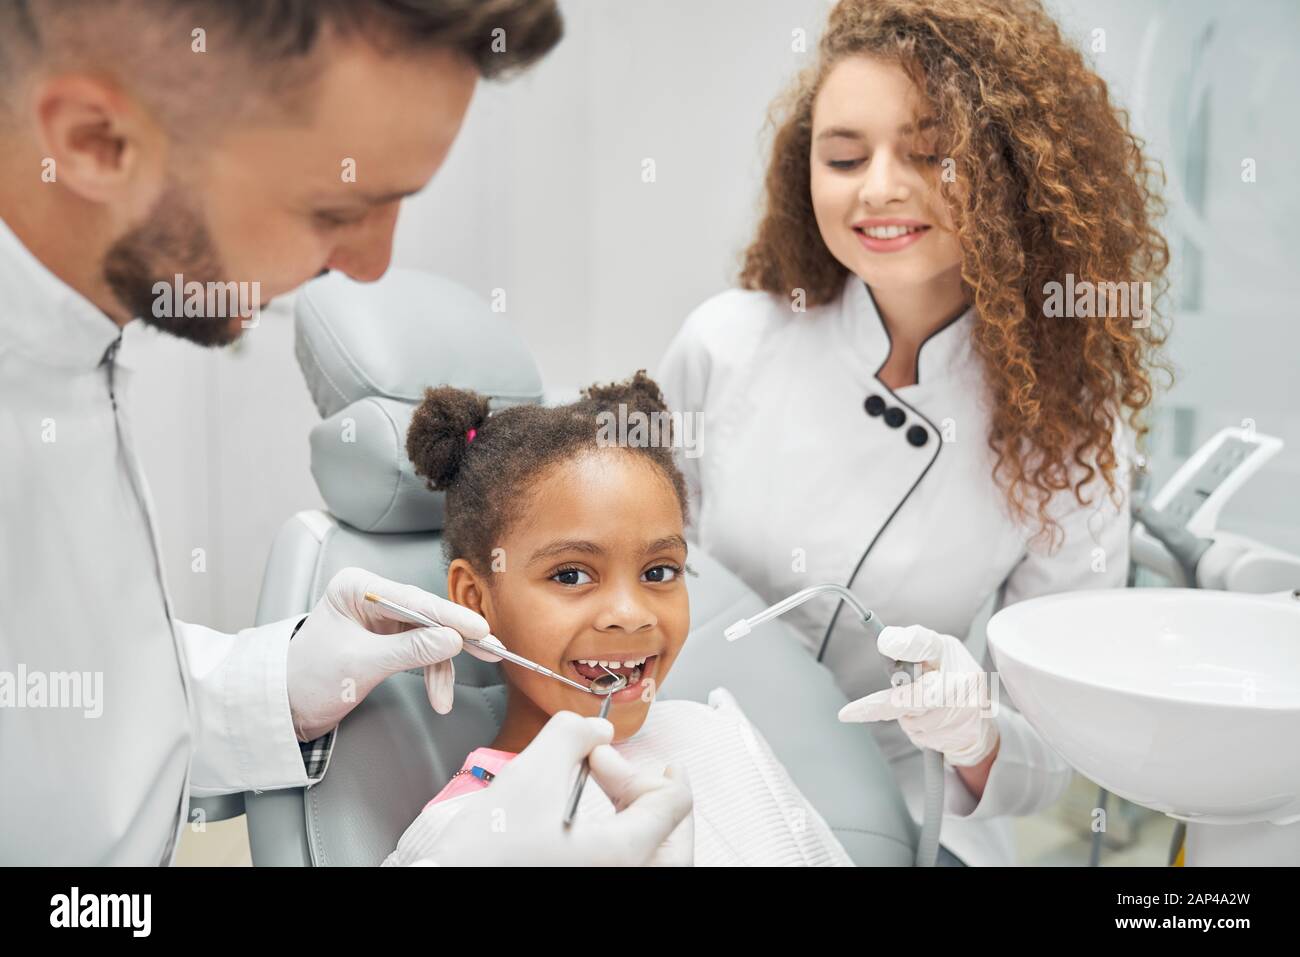 Docteur En Gants Médicaux Noirs Examine Les Dents De La Jeune Fille En  Utilisant Un Microscope Dentaire Et Un Miroir Dans Le Bureau Du Dentiste.  La Femme A Un Bavoir Du Patient